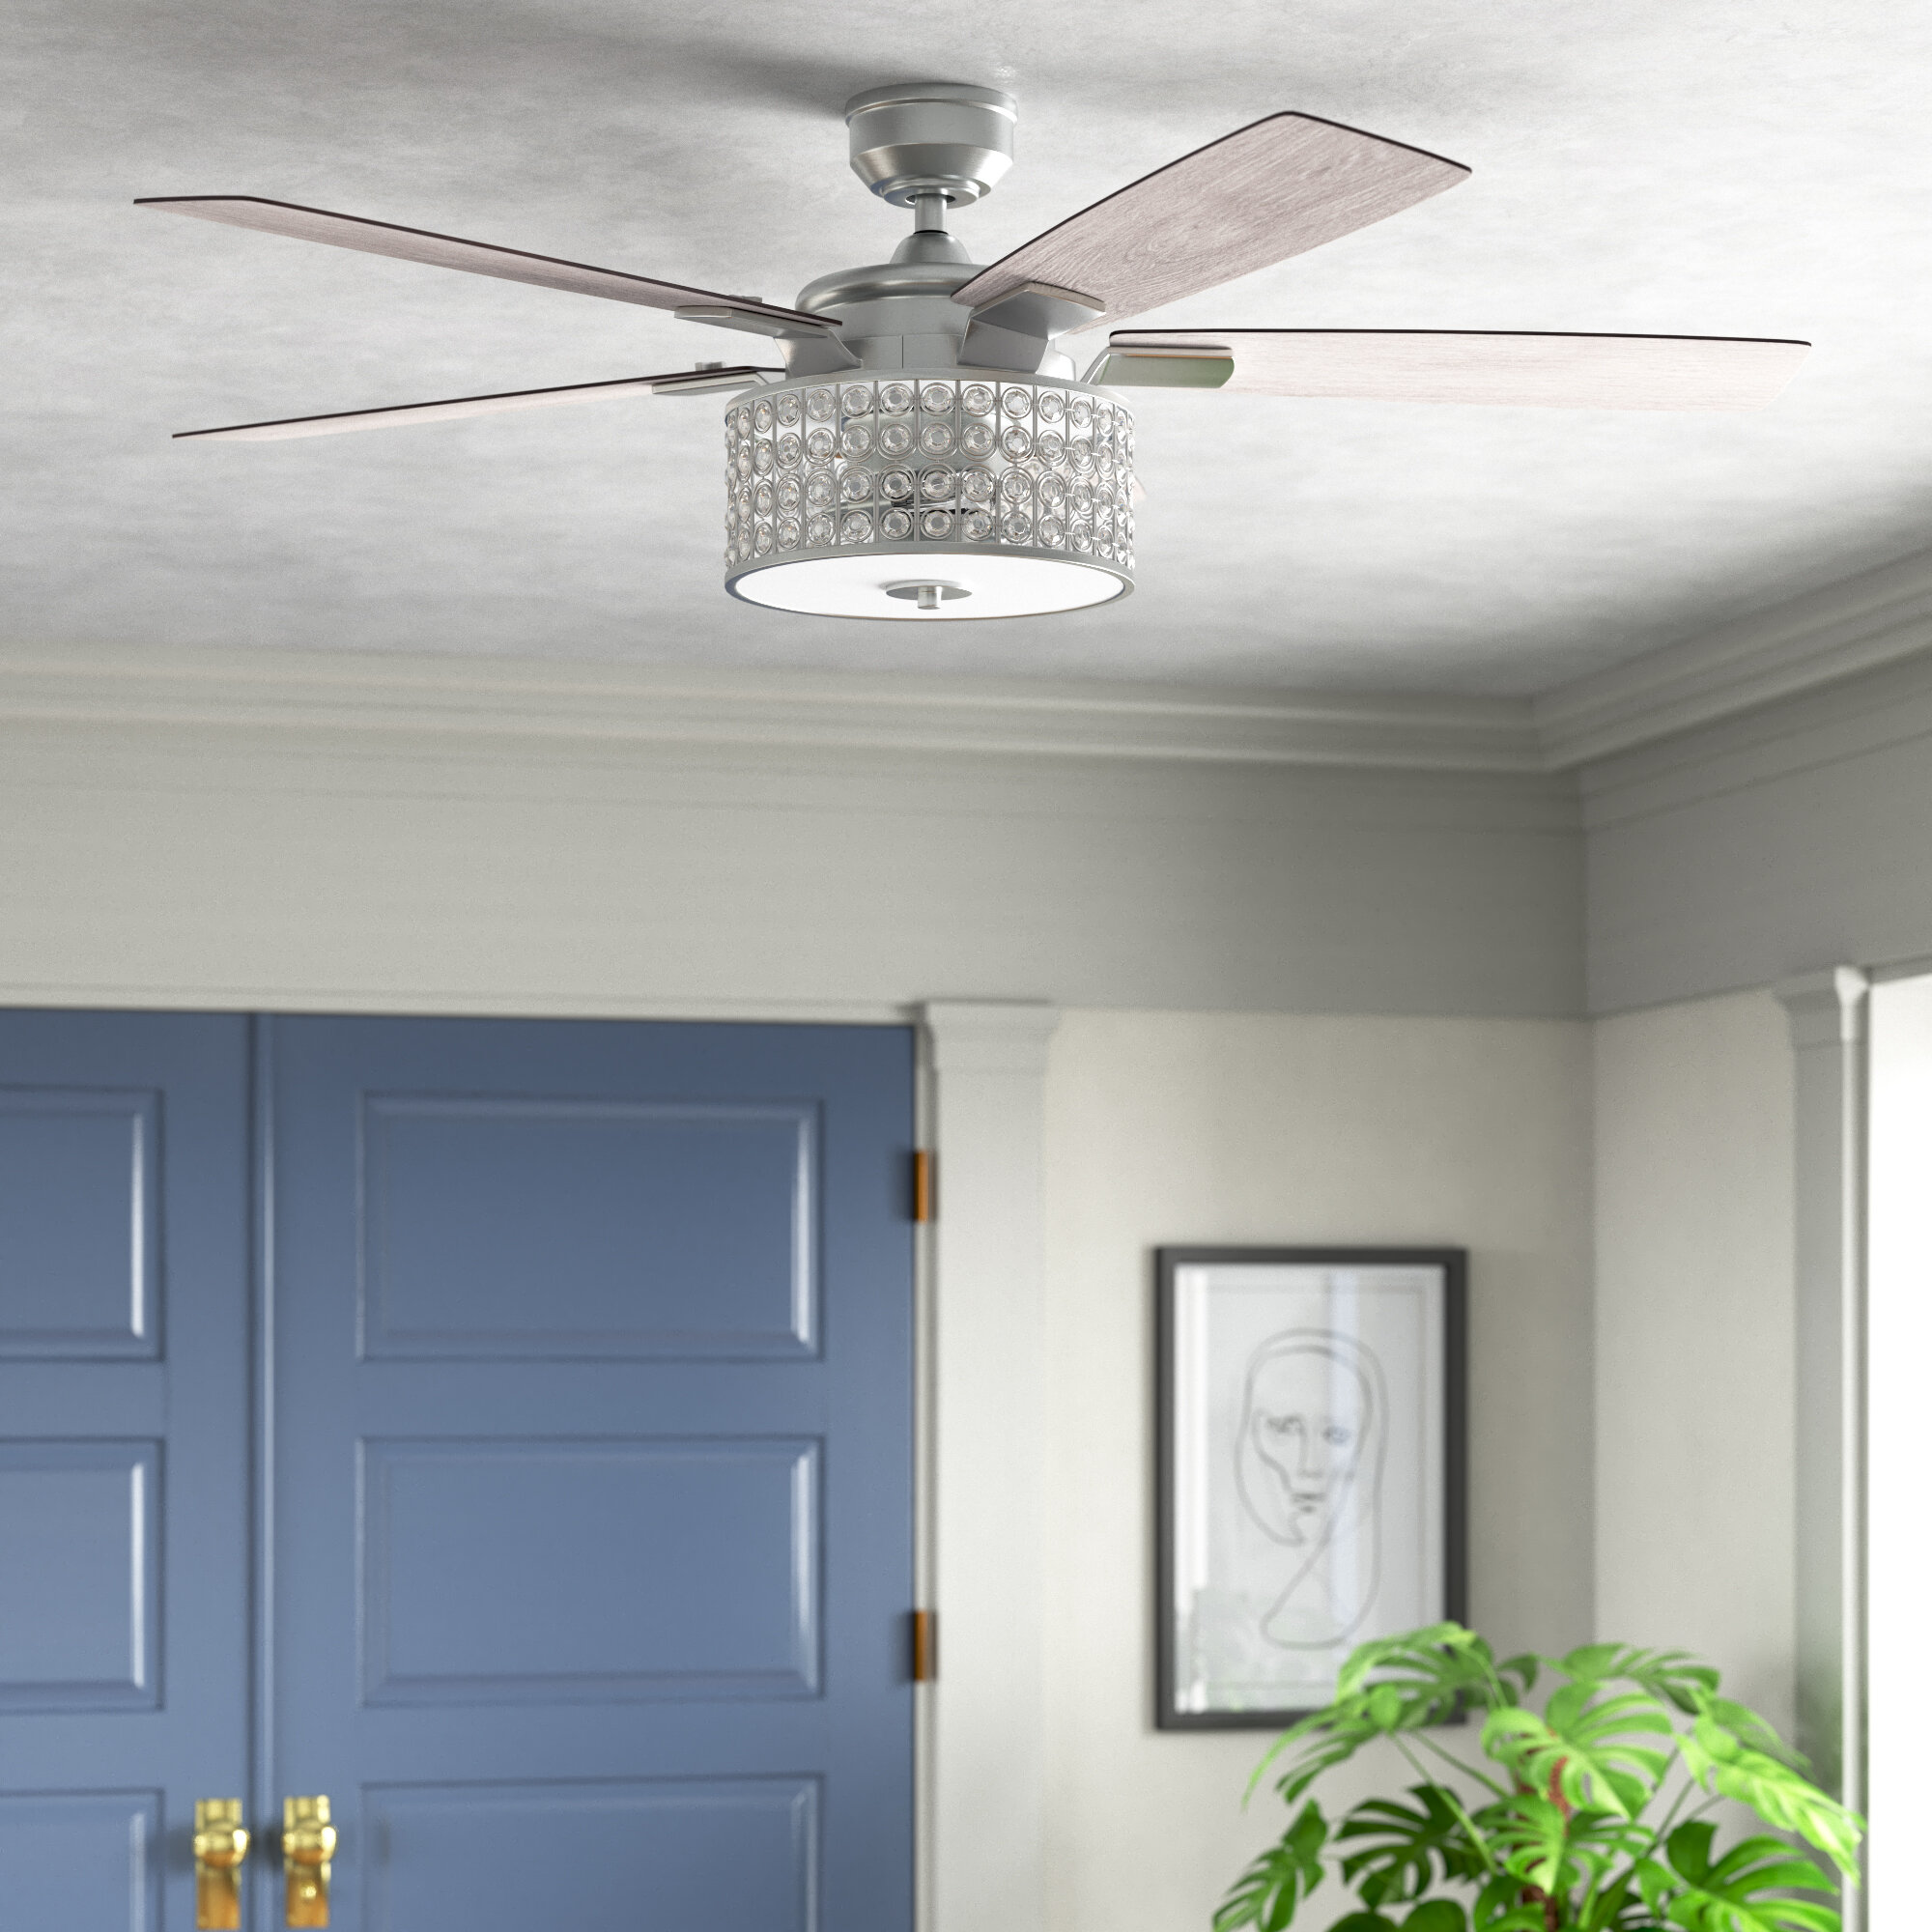 brandwonden Vergelijking Portaal Willa Arlo Interiors Vanmeter 52'' Ceiling Fan with Light Kit and Remote  Included & Reviews | Wayfair